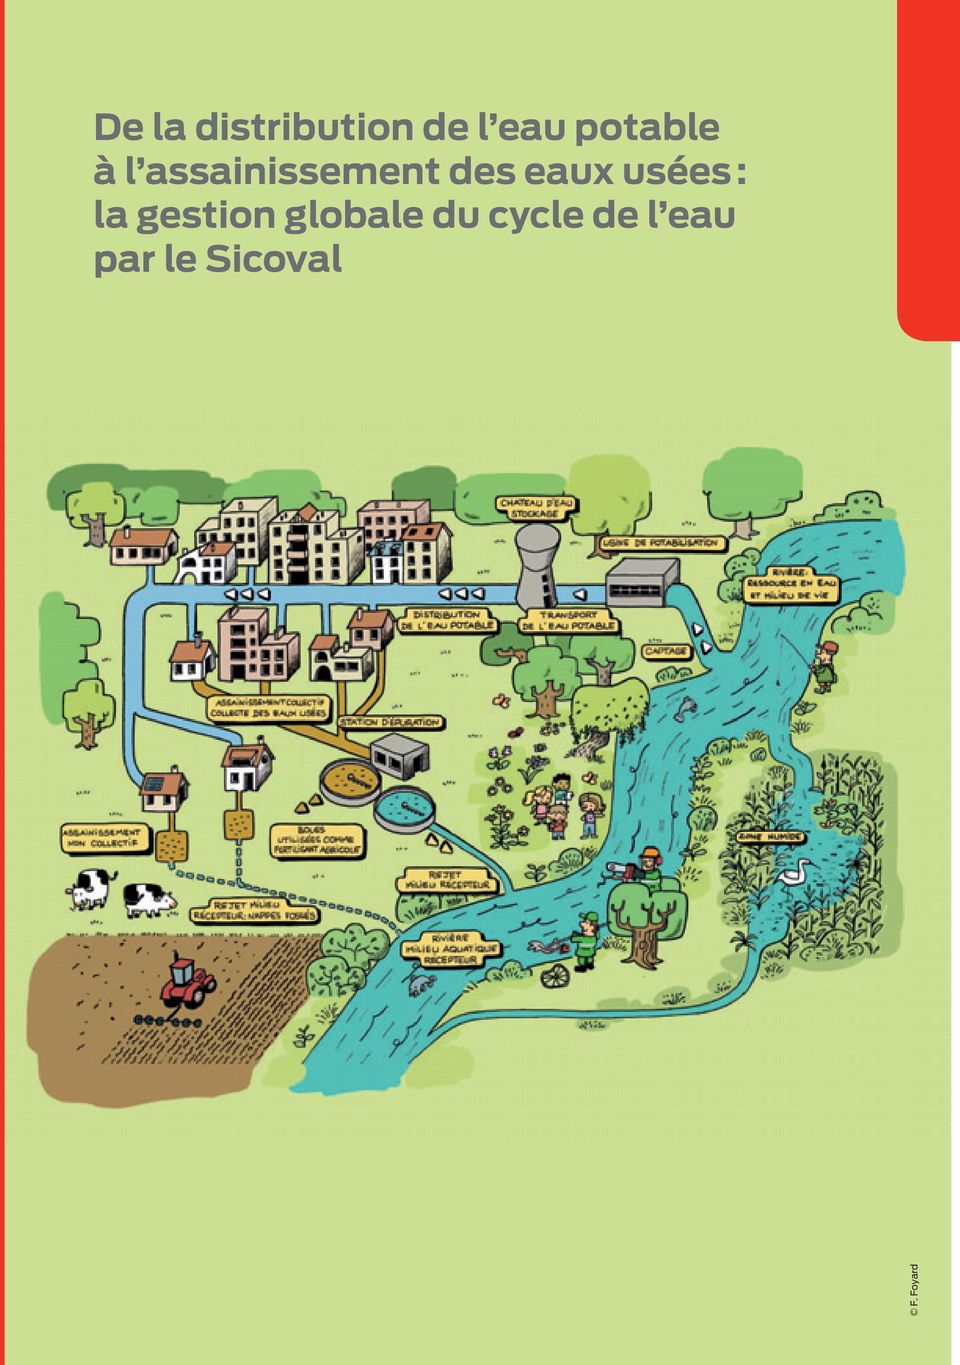 du cycle de l eau par le Sicoval Une gestion